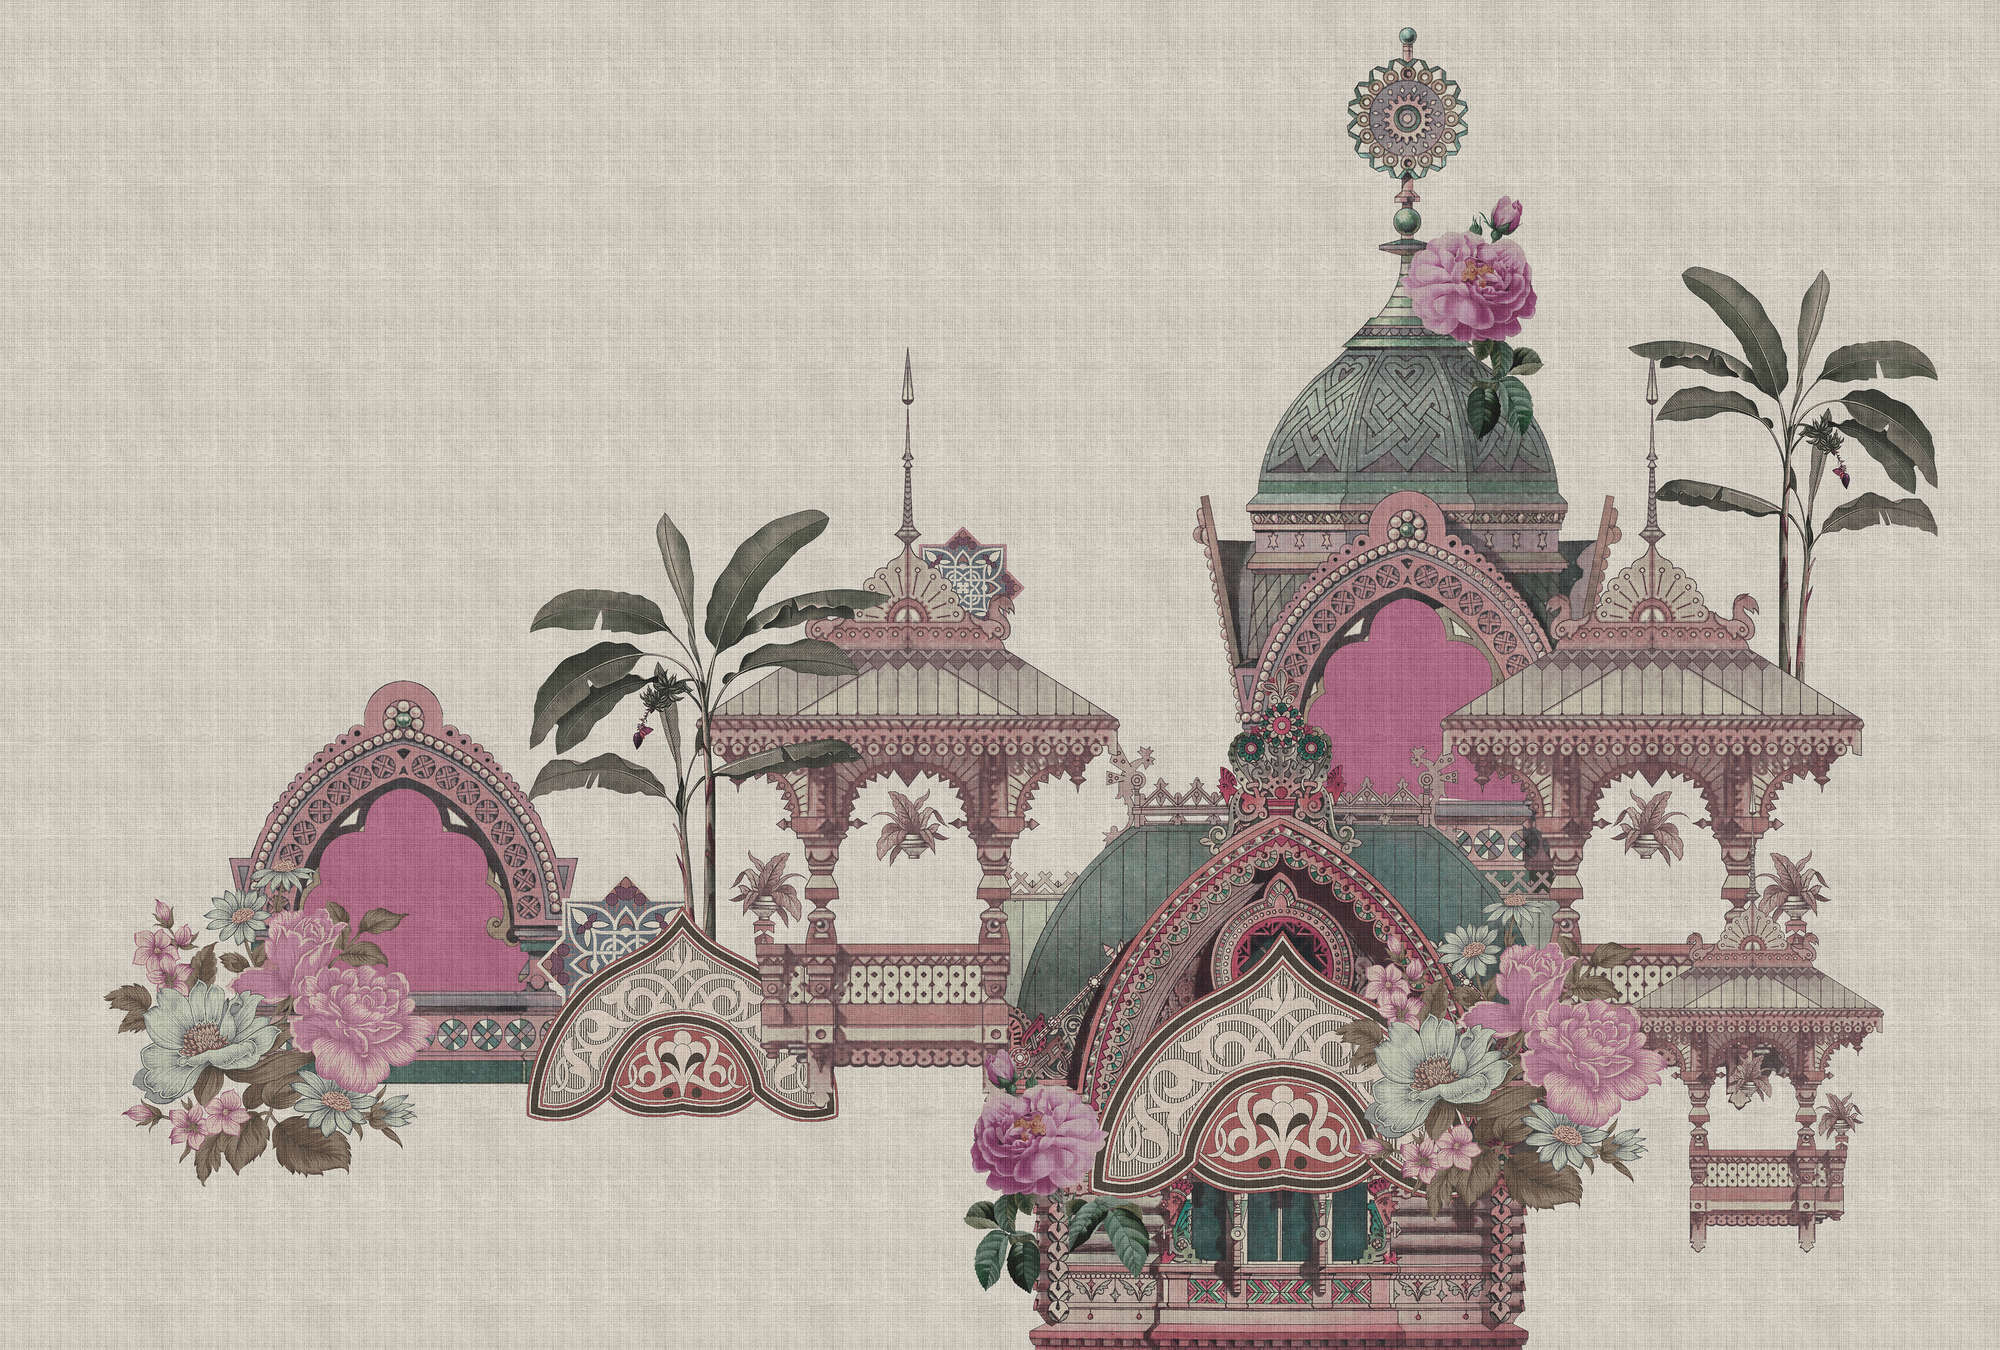             Jaipur 2 - Papier peint Inde Temple & Fleurs
        